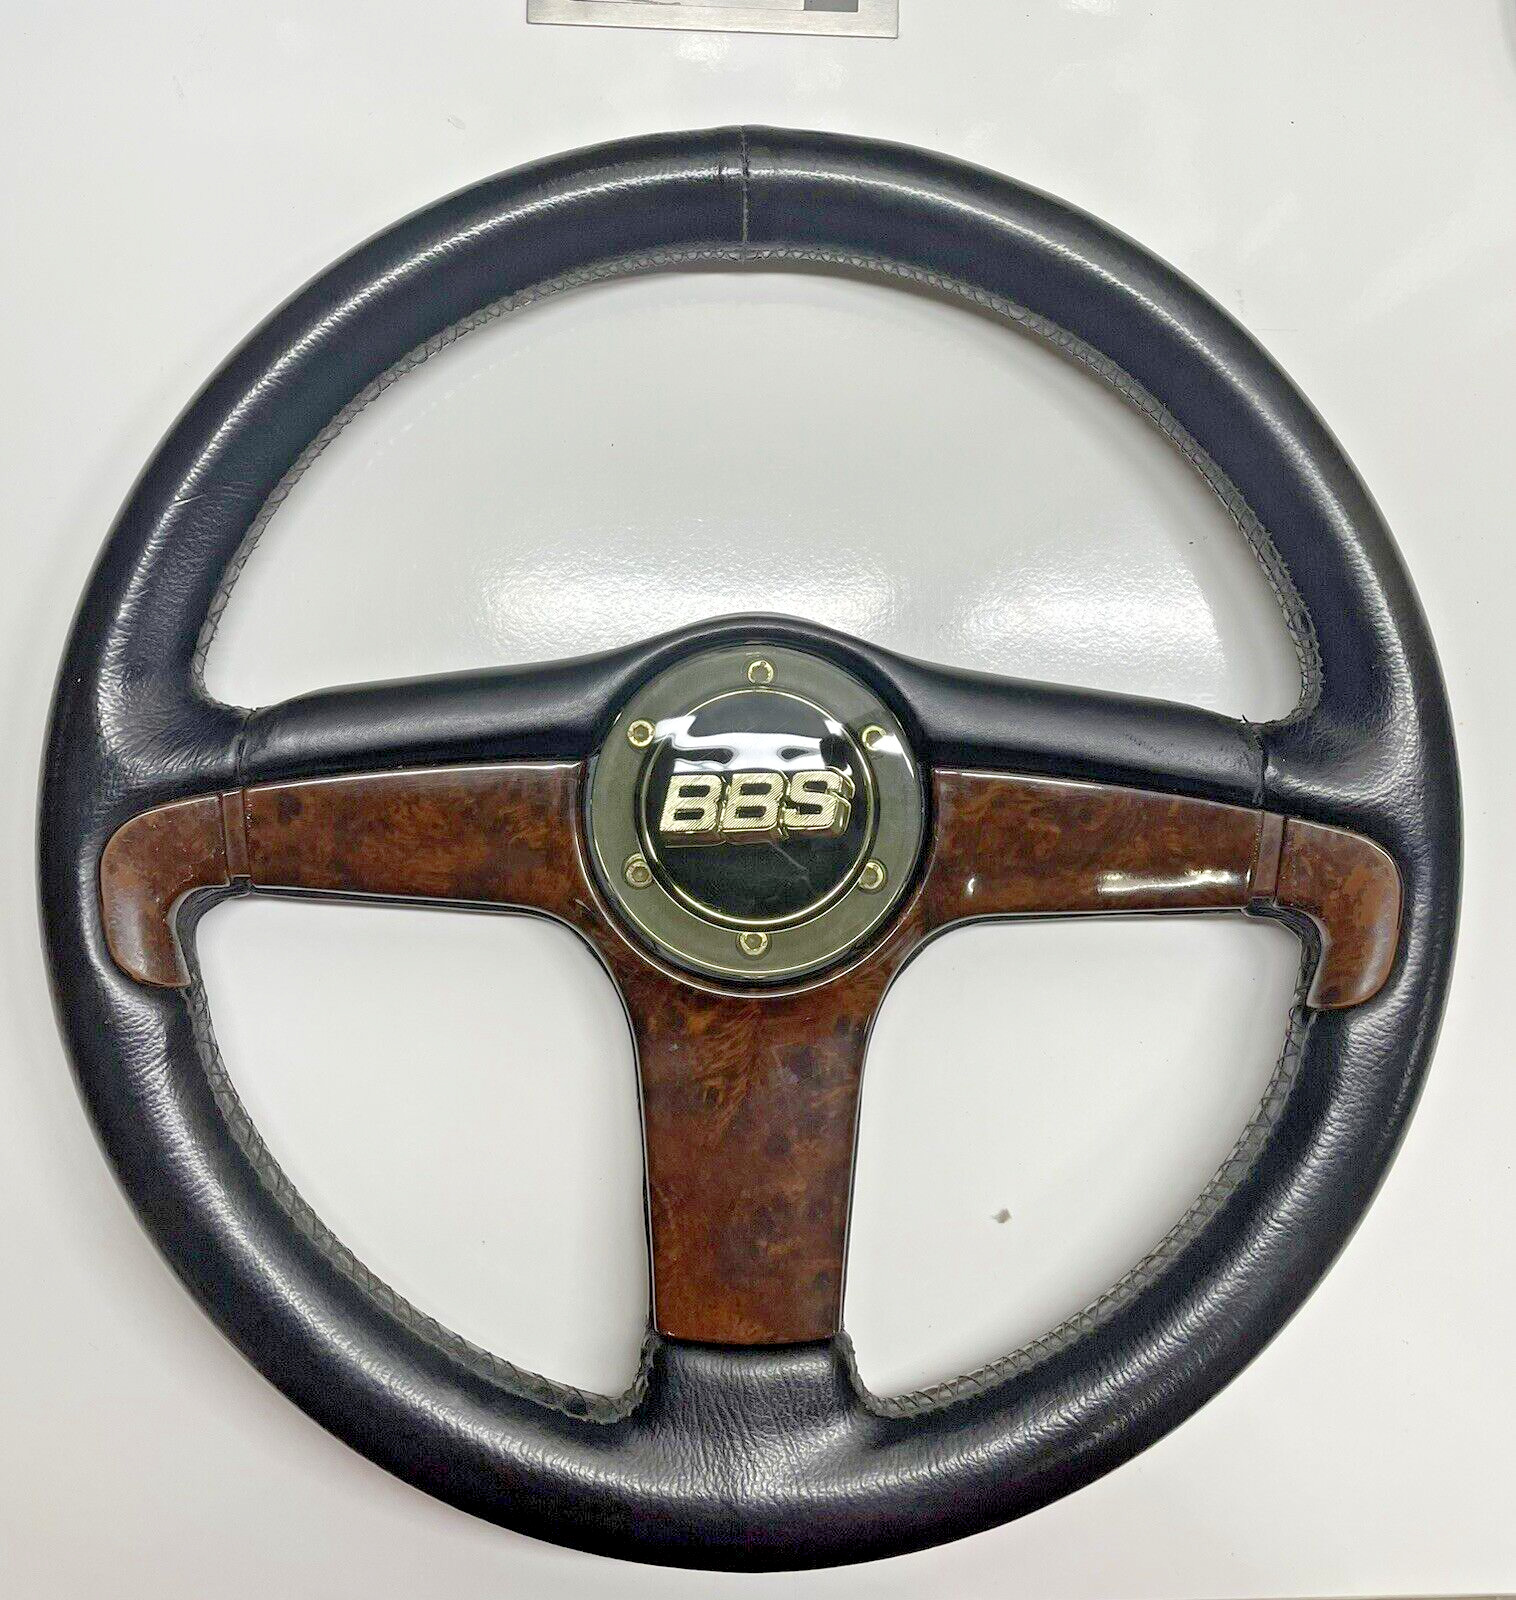 Genuine BBS Steering wheel 911 914 930 933 BMW E30 E28 W123 W124 W201 W126 300CE